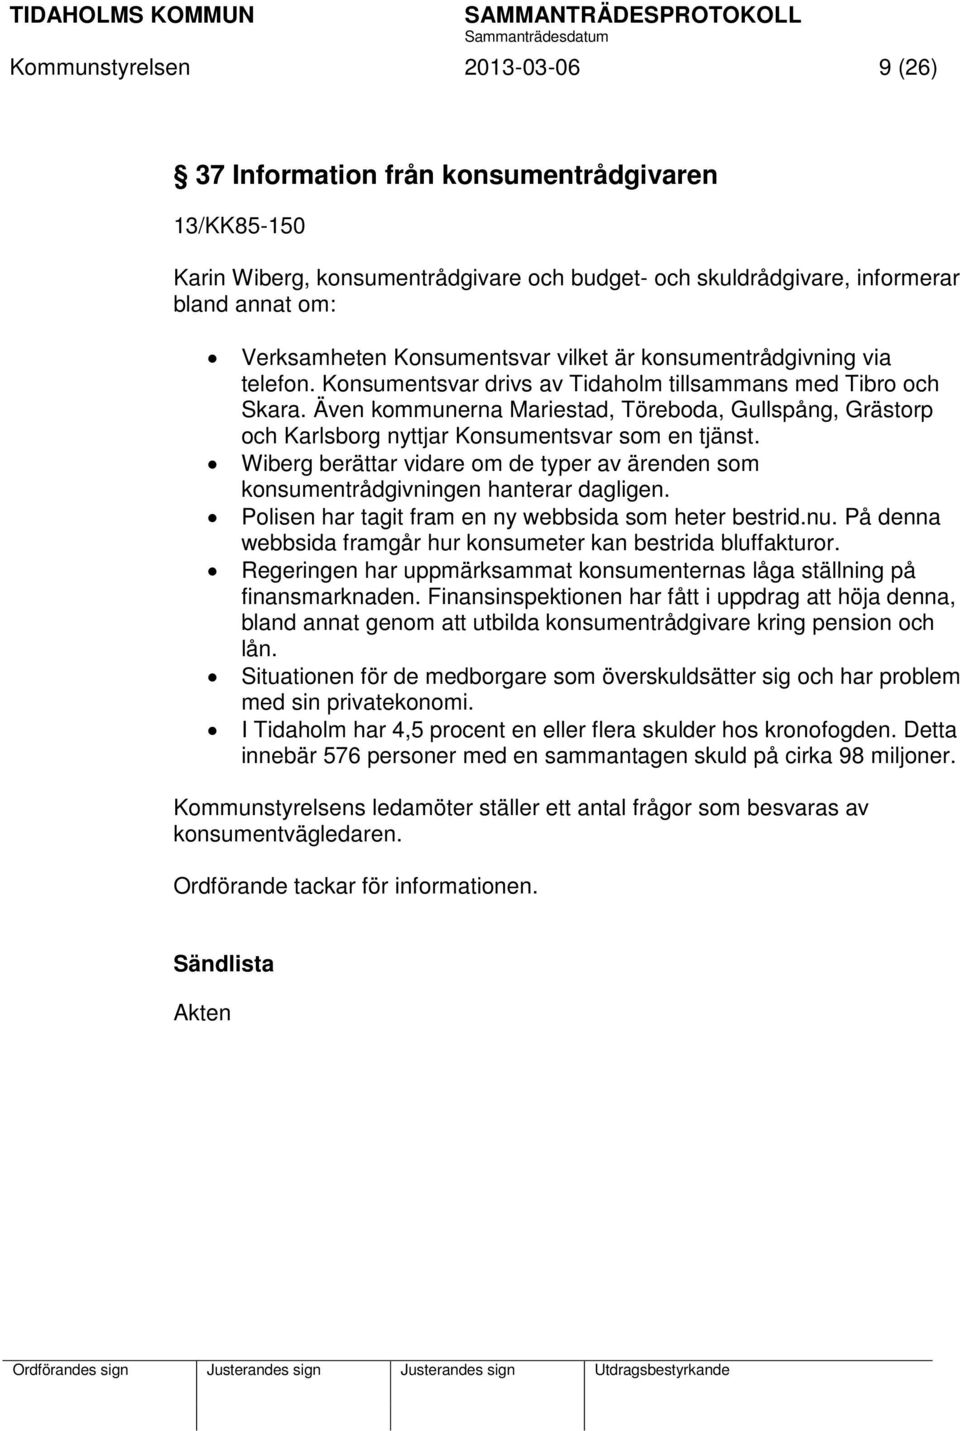 Även kommunerna Mariestad, Töreboda, Gullspång, Grästorp och Karlsborg nyttjar Konsumentsvar som en tjänst. Wiberg berättar vidare om de typer av ärenden som konsumentrådgivningen hanterar dagligen.